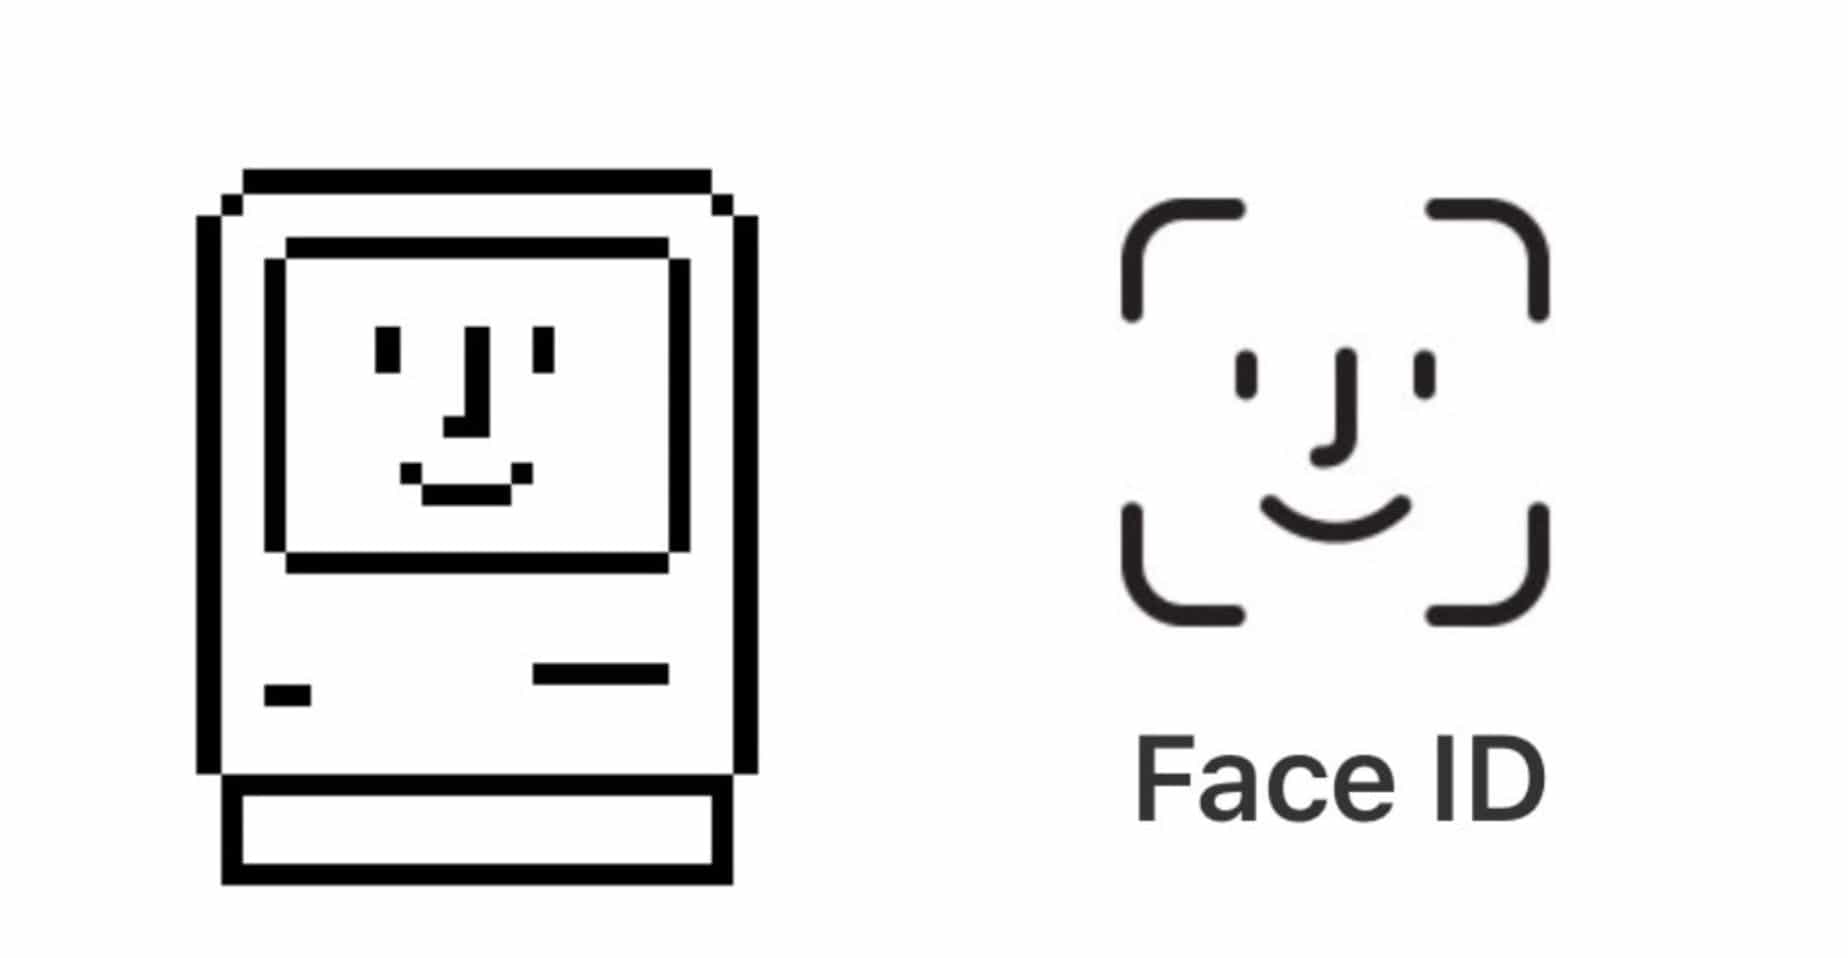 Mac Logo - Face ID logo resurrects a classic Macintosh icon | Cult of Mac